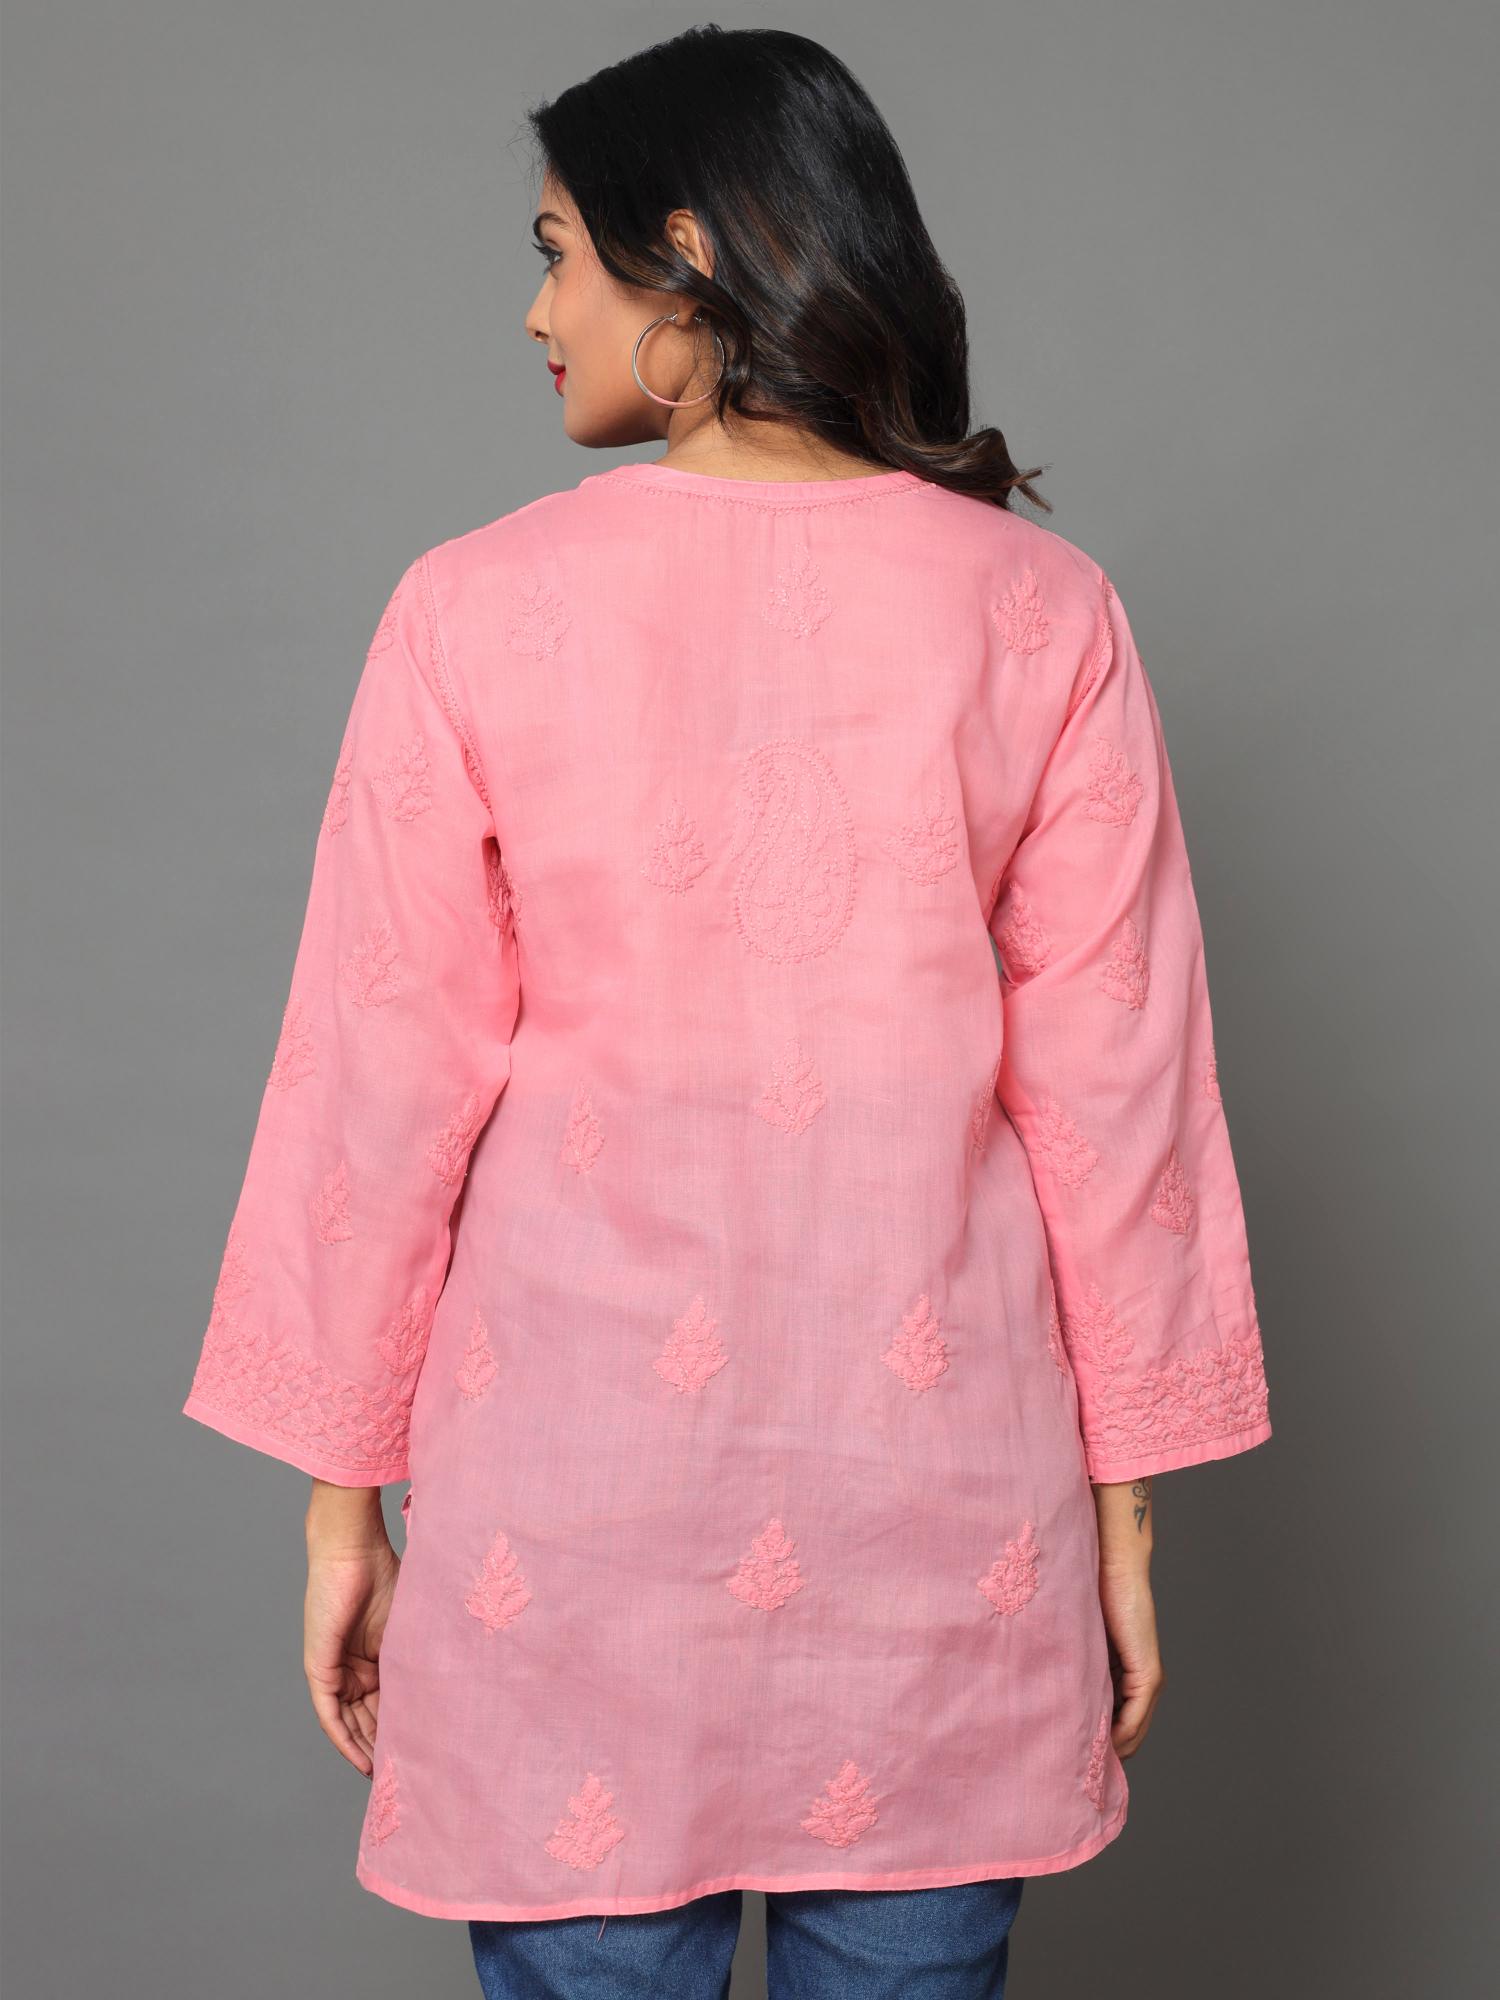 HerClozet Lucknow Chikankari Cotton Top-Peach Pink - 36